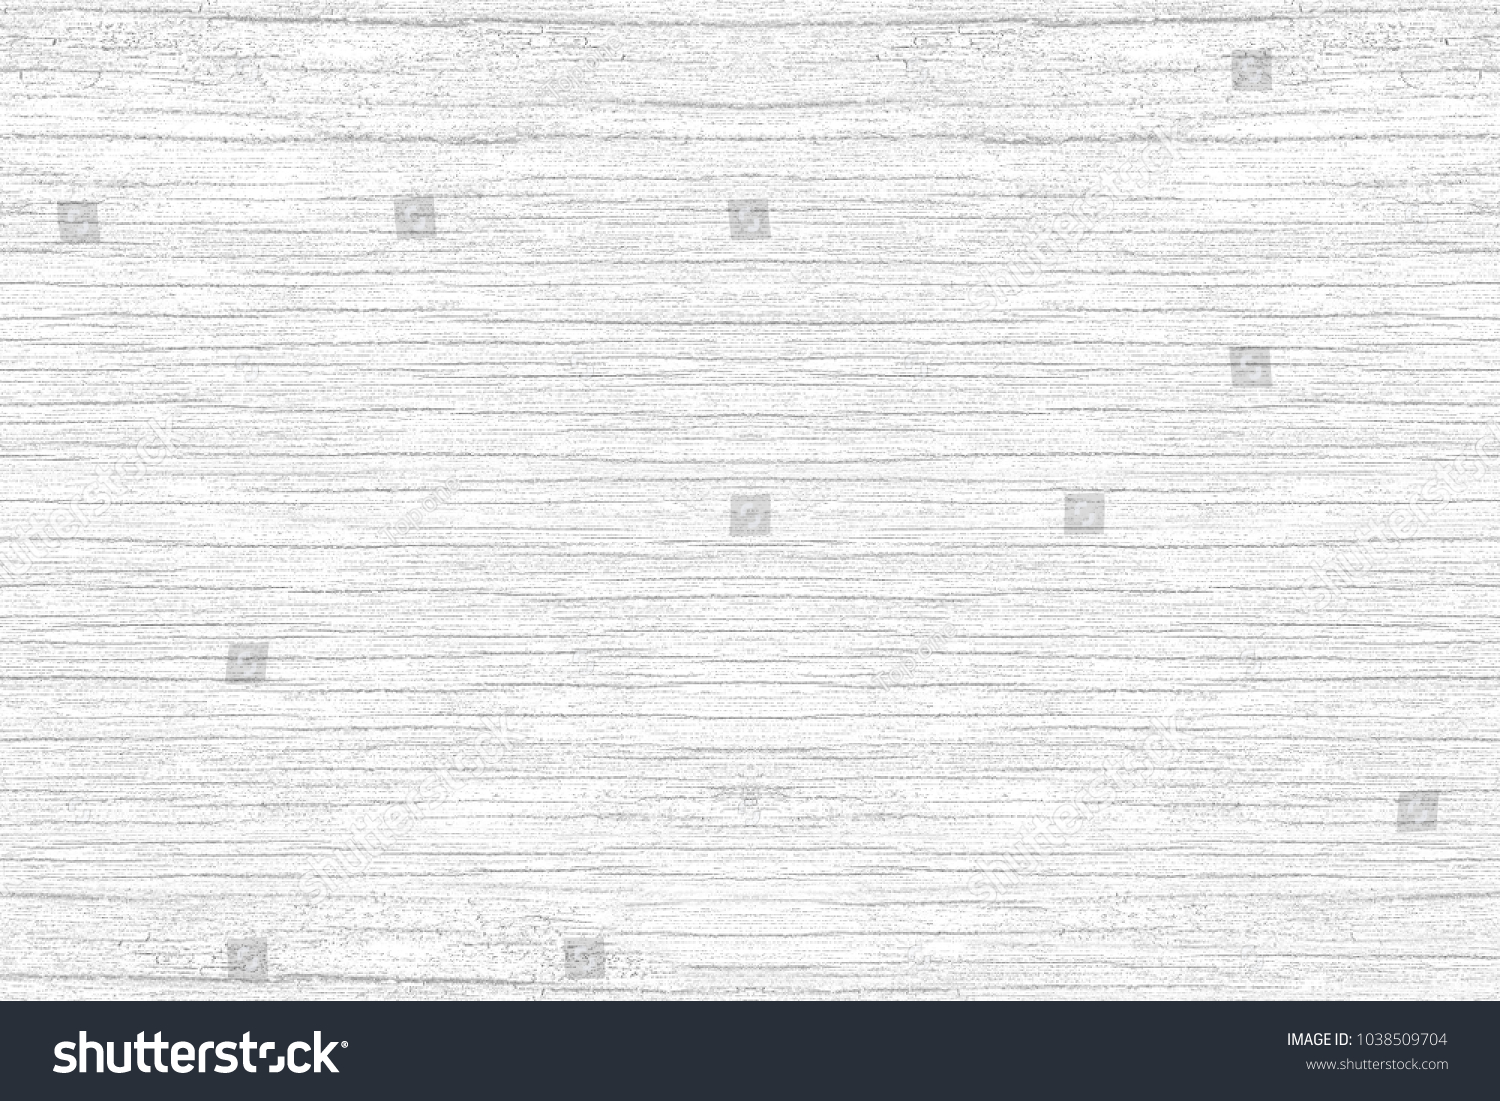 White wood texture, Empty hardwood background #1038509704